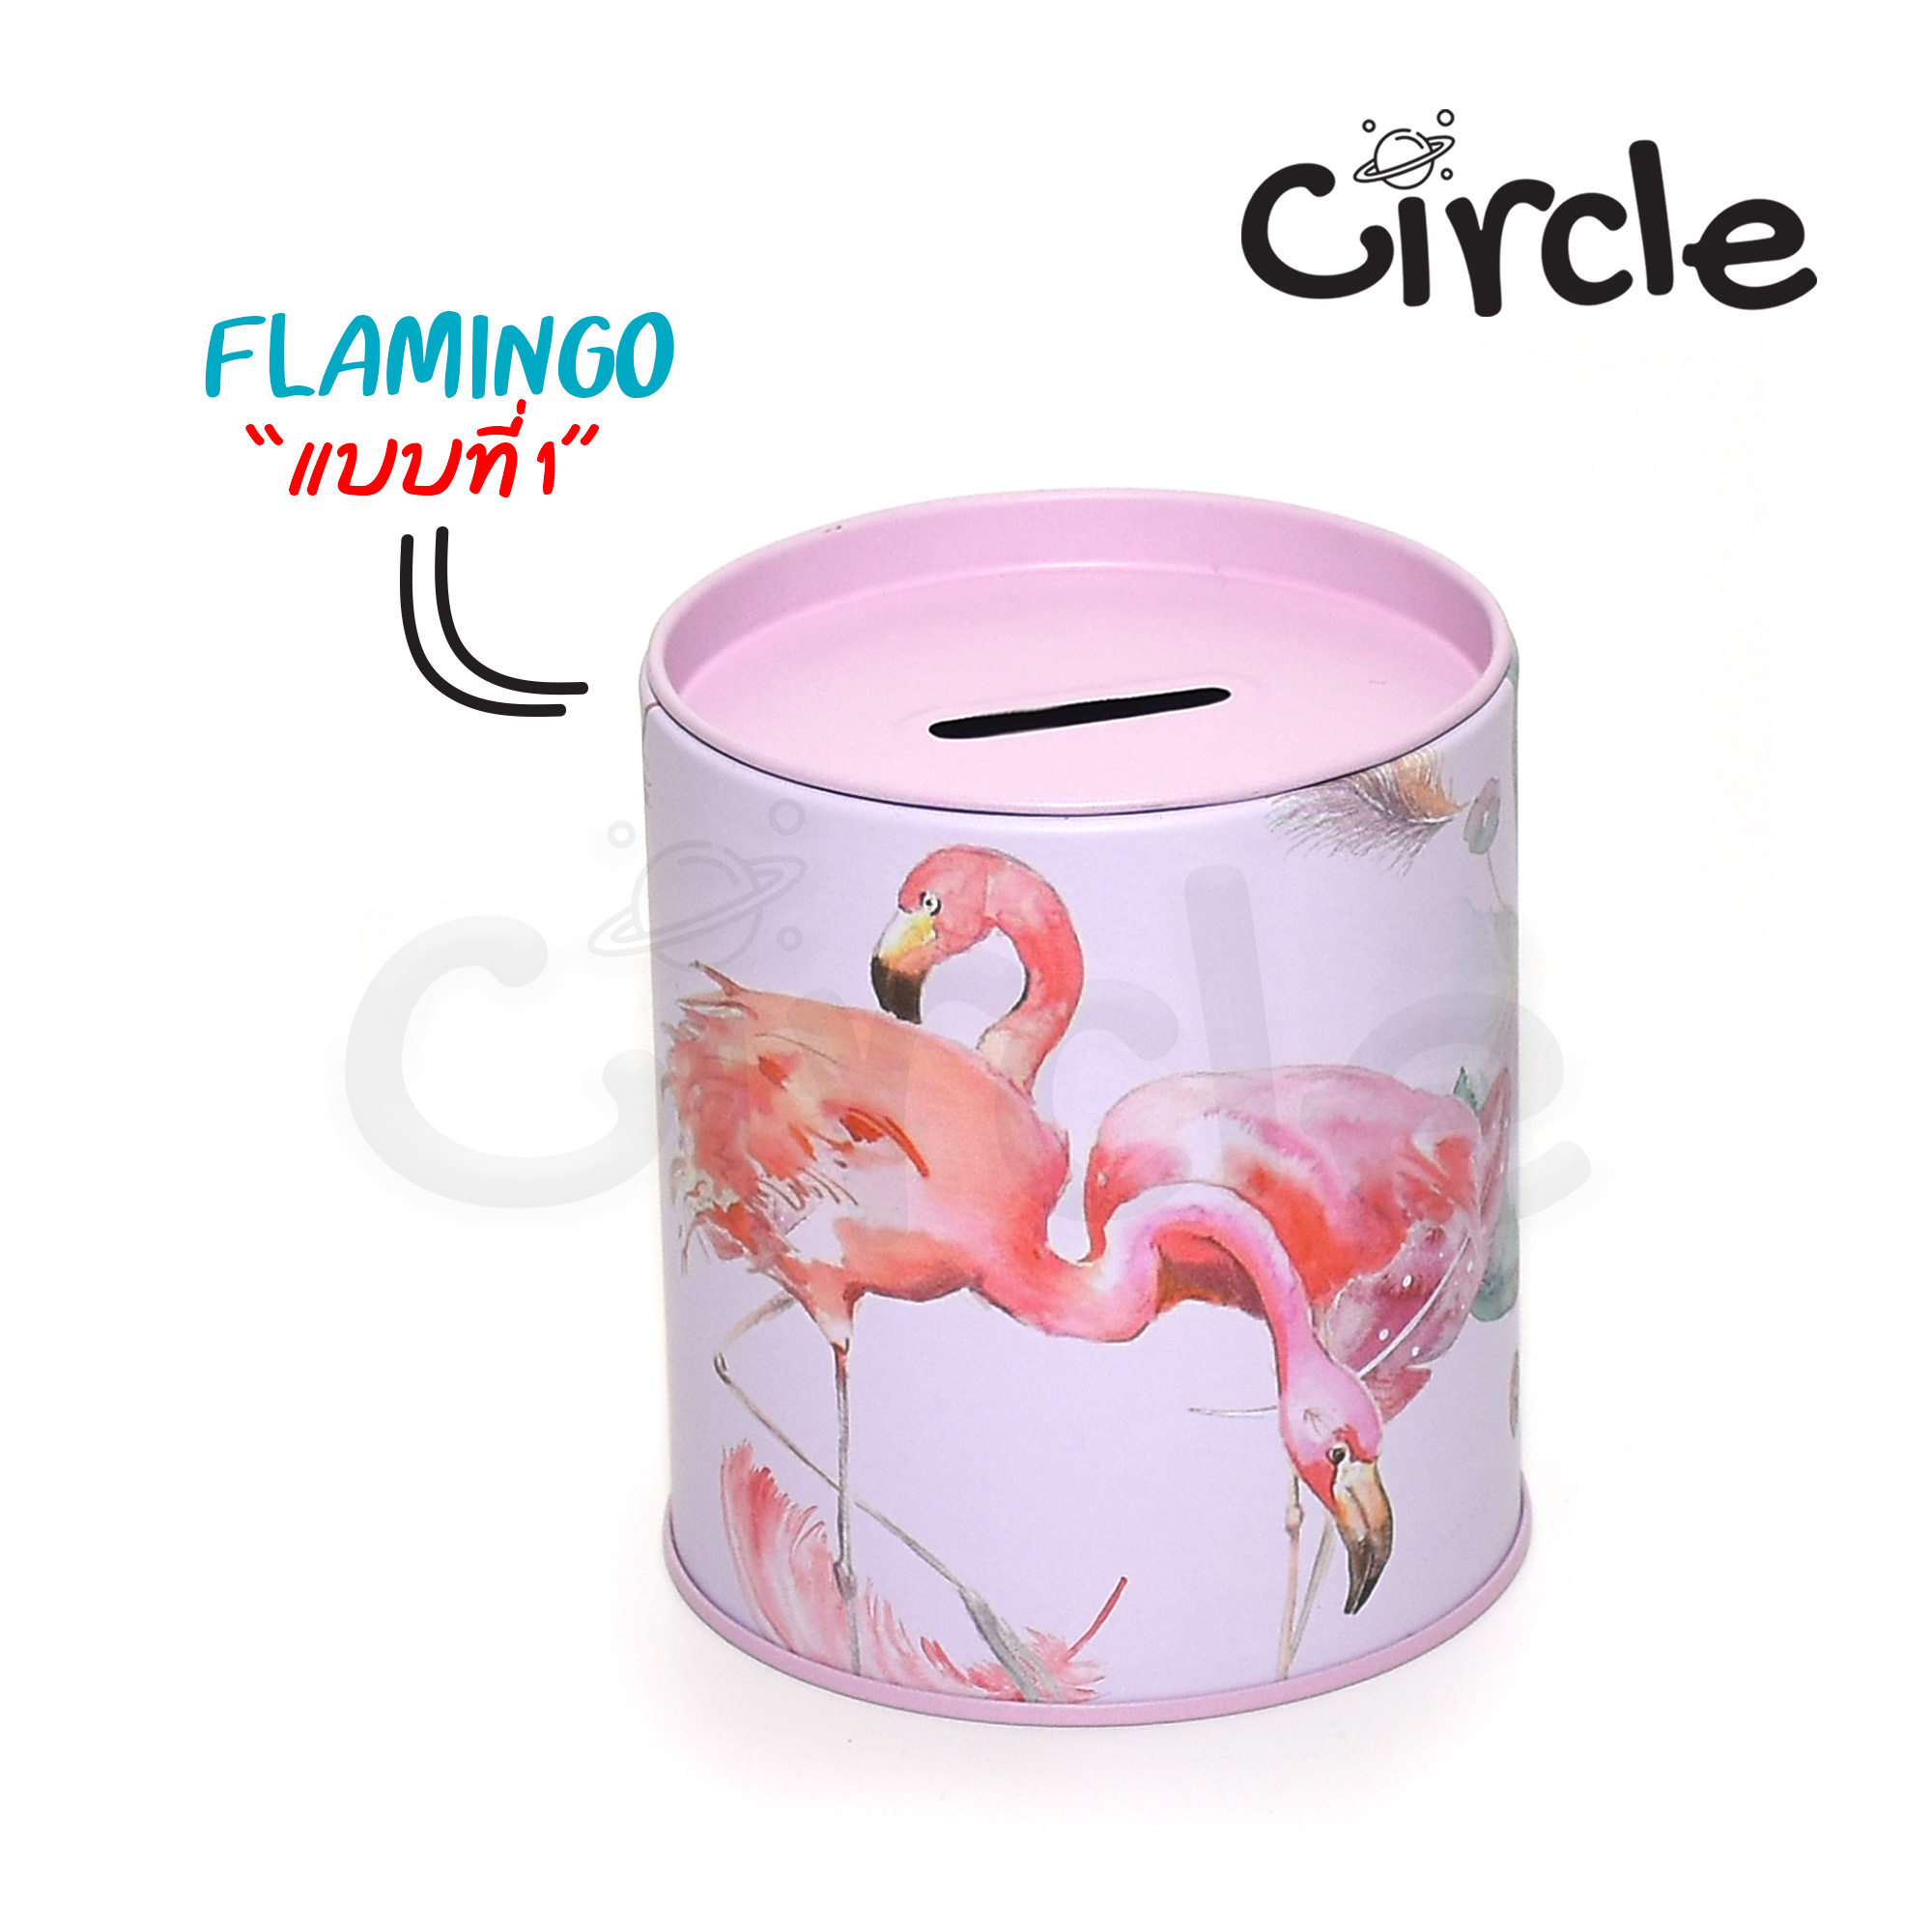 กระปุกออมสิน ทรงกลม ขนาด 9 x 9 x 10 ซม. ลายนก Flamingo รูปแบบเปิด-ปิดฝาบน สี 4 แบบ